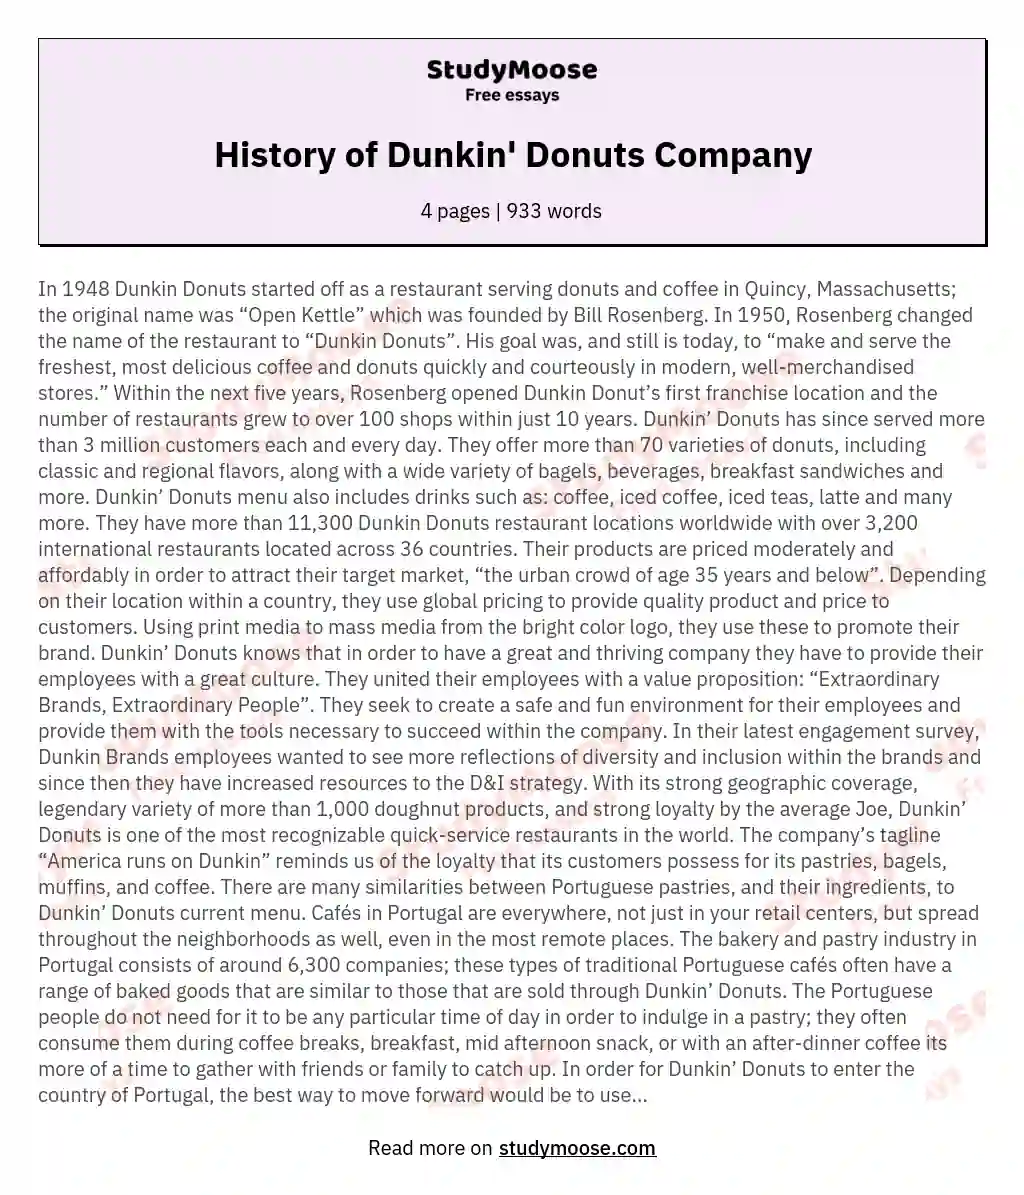 History of Dunkin' Donuts Company essay